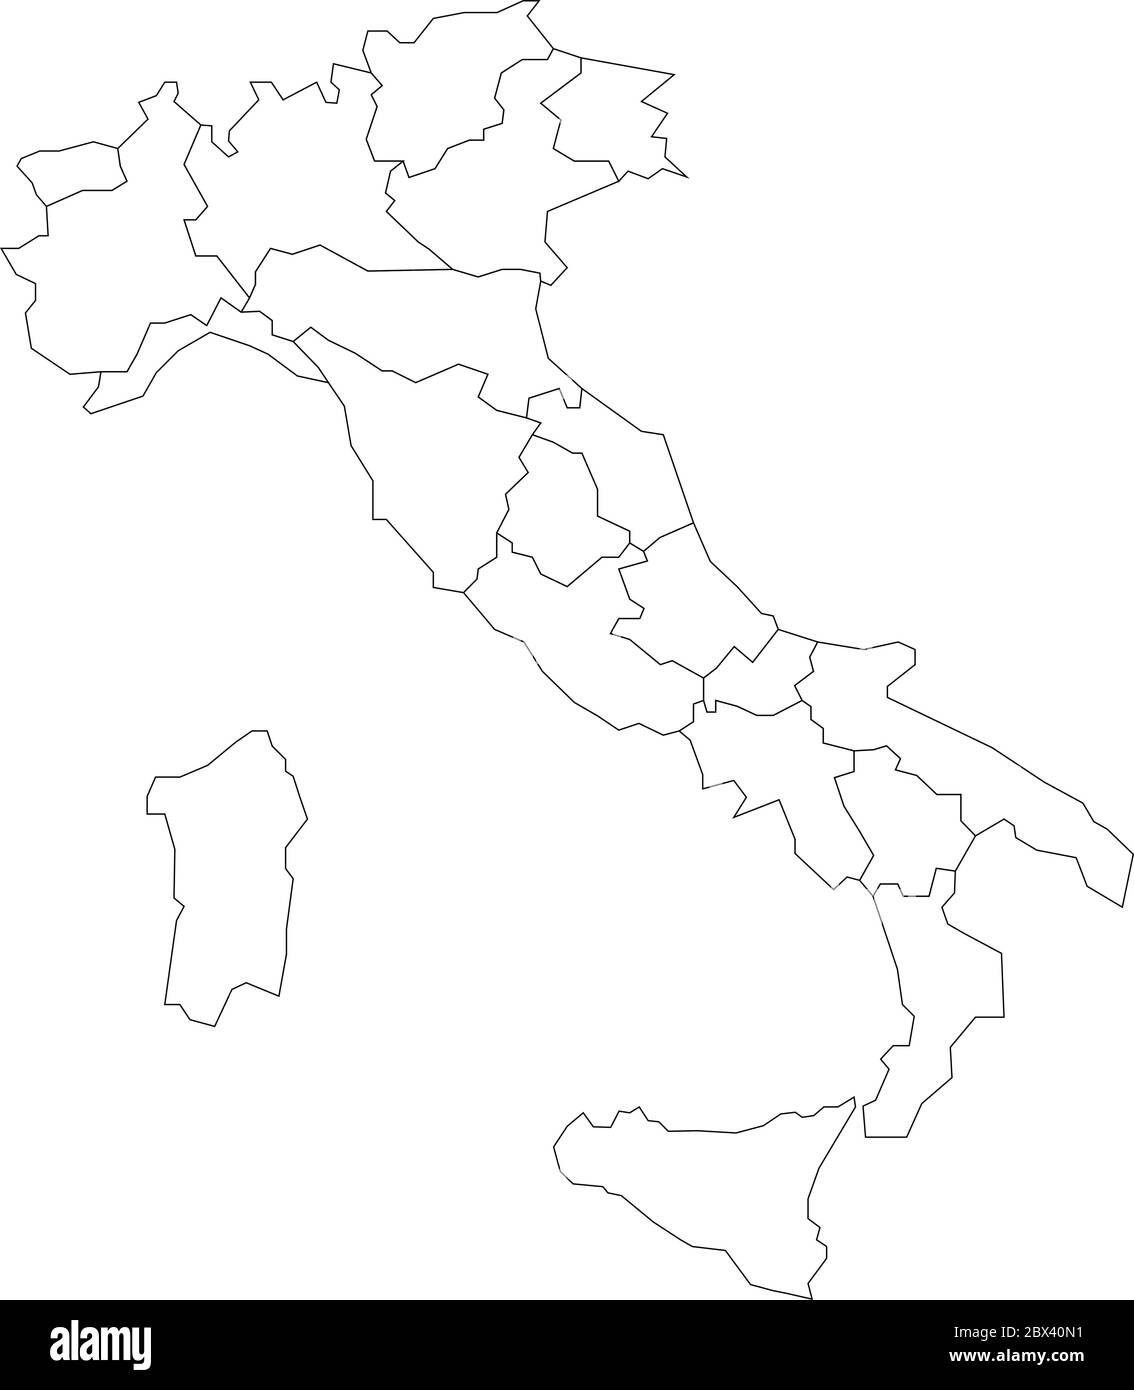 Karte von Italien in 20 Verwaltungsregionen unterteilt. Weißes Land und schwarze Umrisse. Einfache flache Vektorgrafik. Stock Vektor